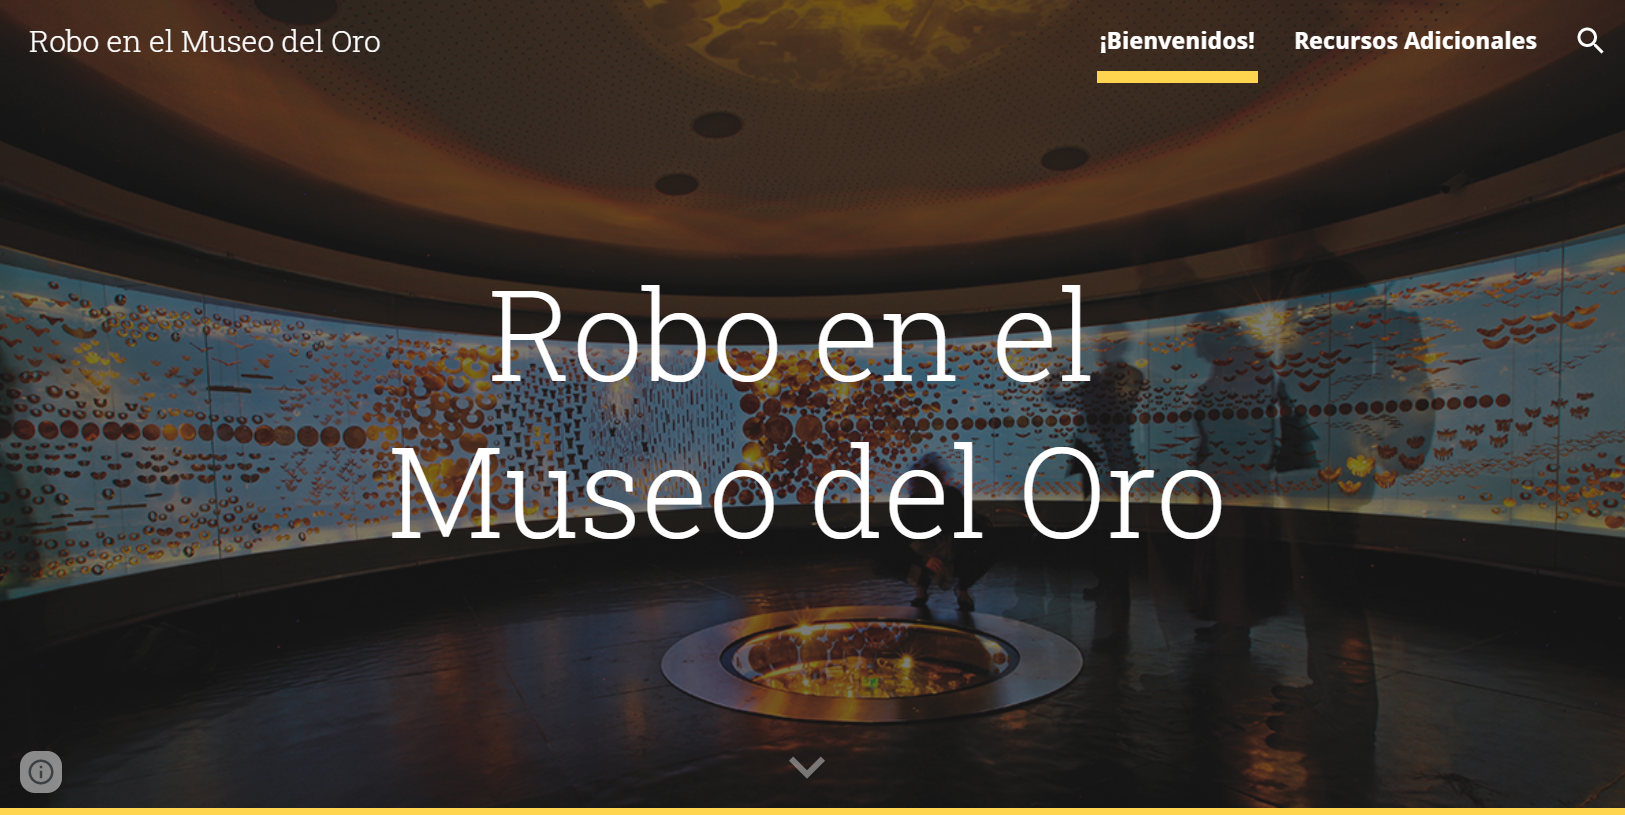 Robo en el Museo del Oro